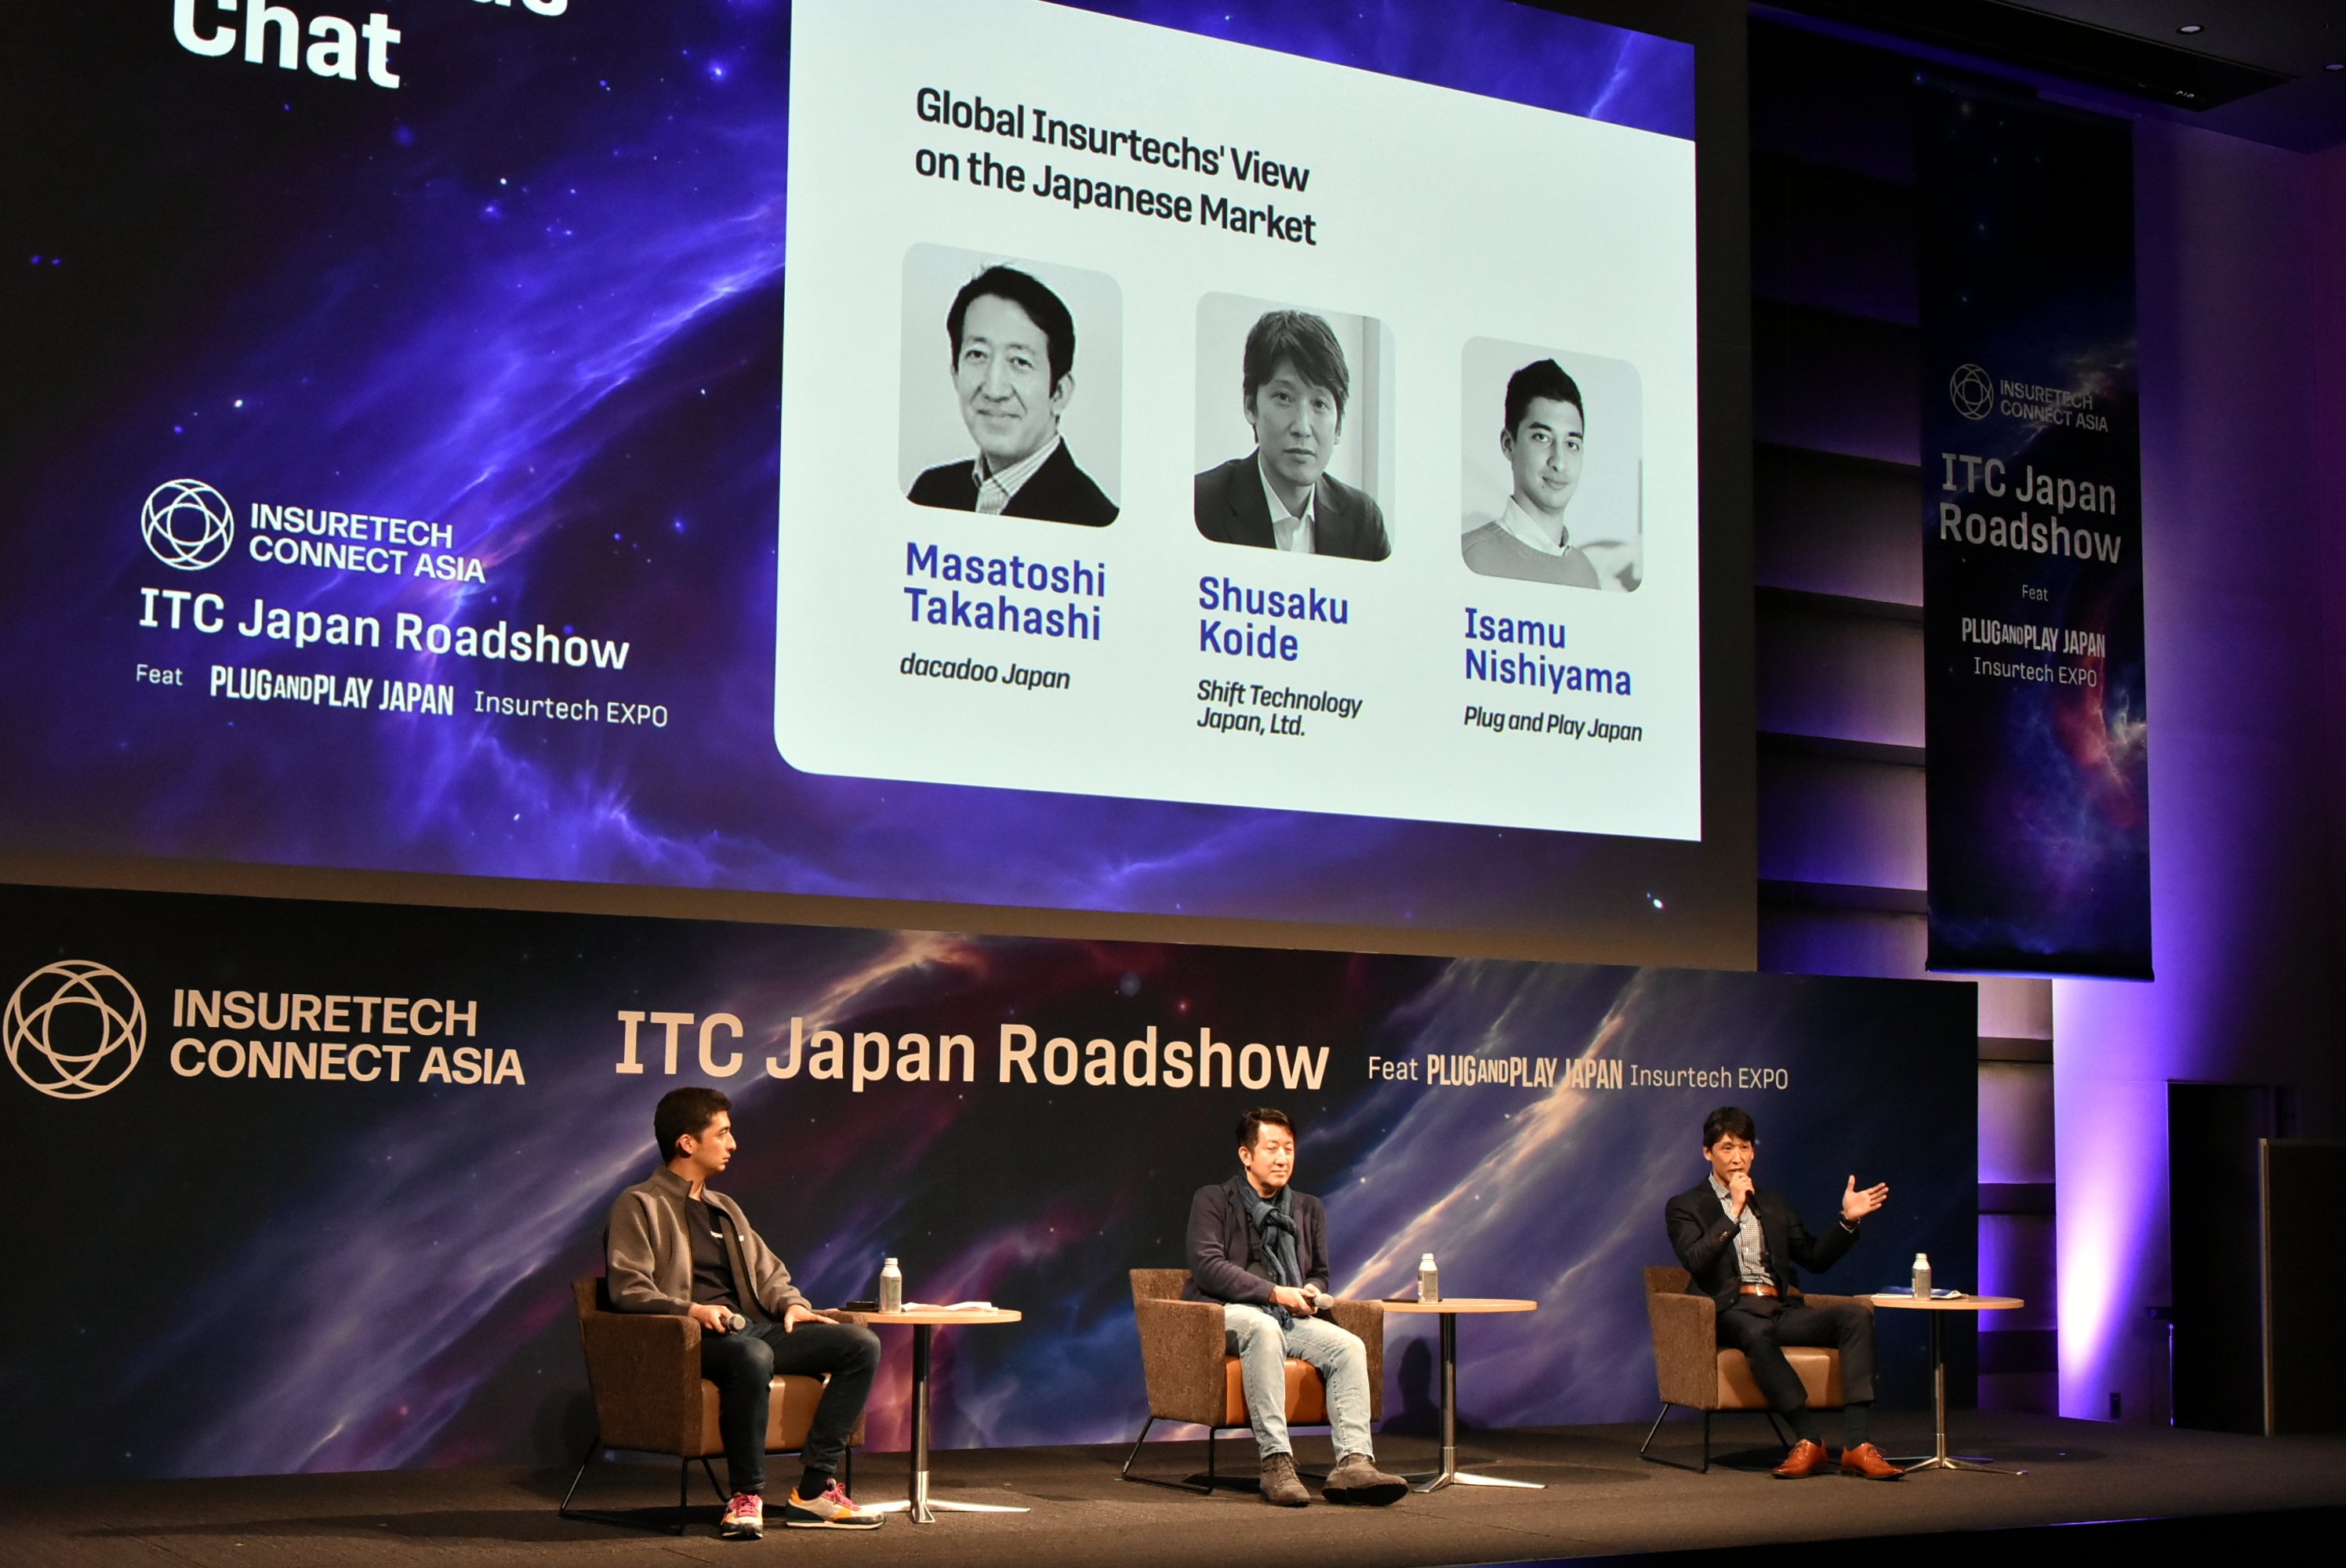 世界最大級のInsurtechイベントが日本で初開催 | ITC Japan Roadshow